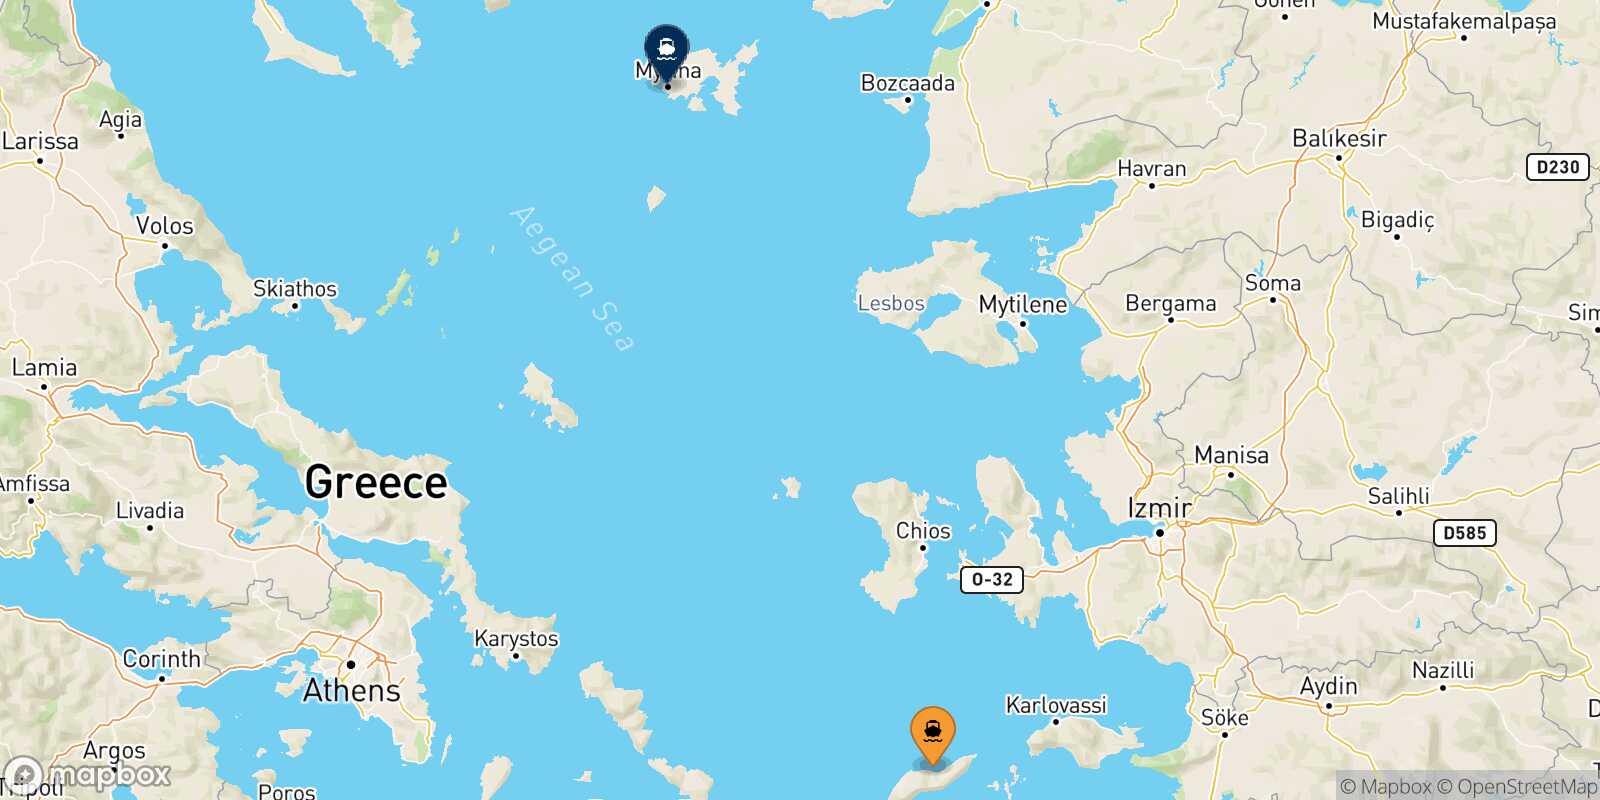 Mapa de la ruta Agios Kirikos (Ikaria) Mirina (Limnos)